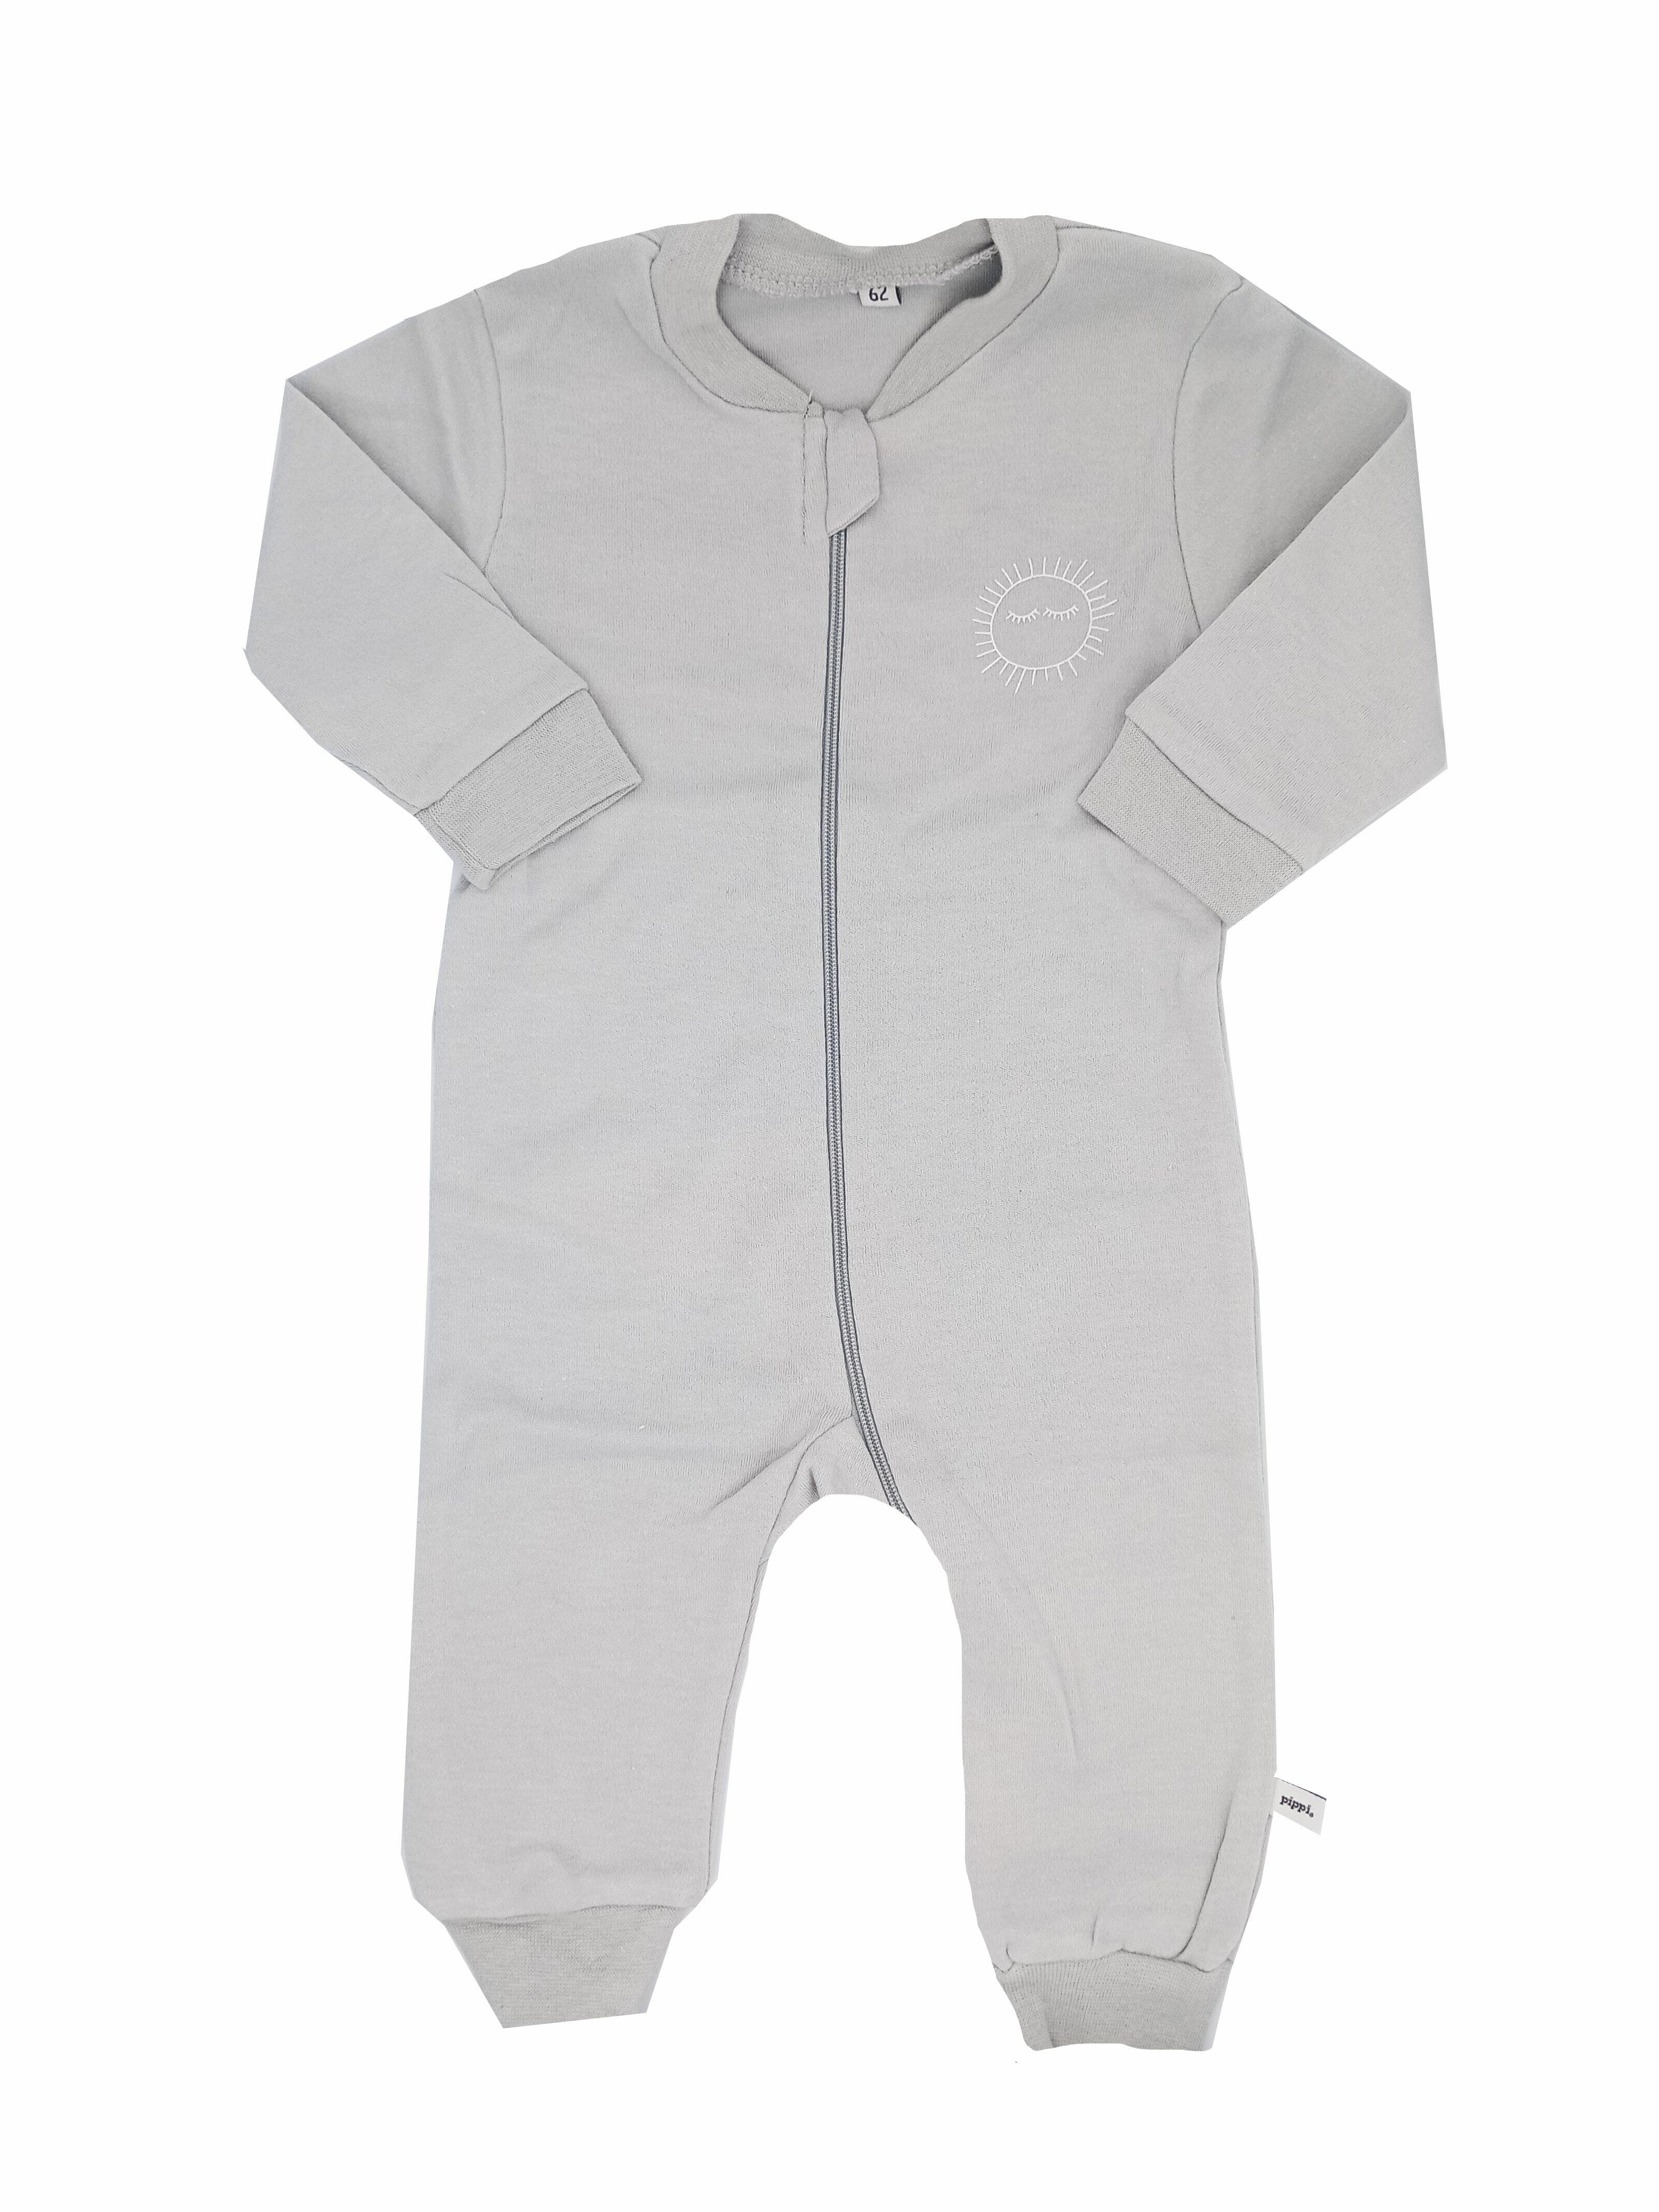 Grey sunshine Footless Babygrow - Sleepsuit / Babygrow - Pippi